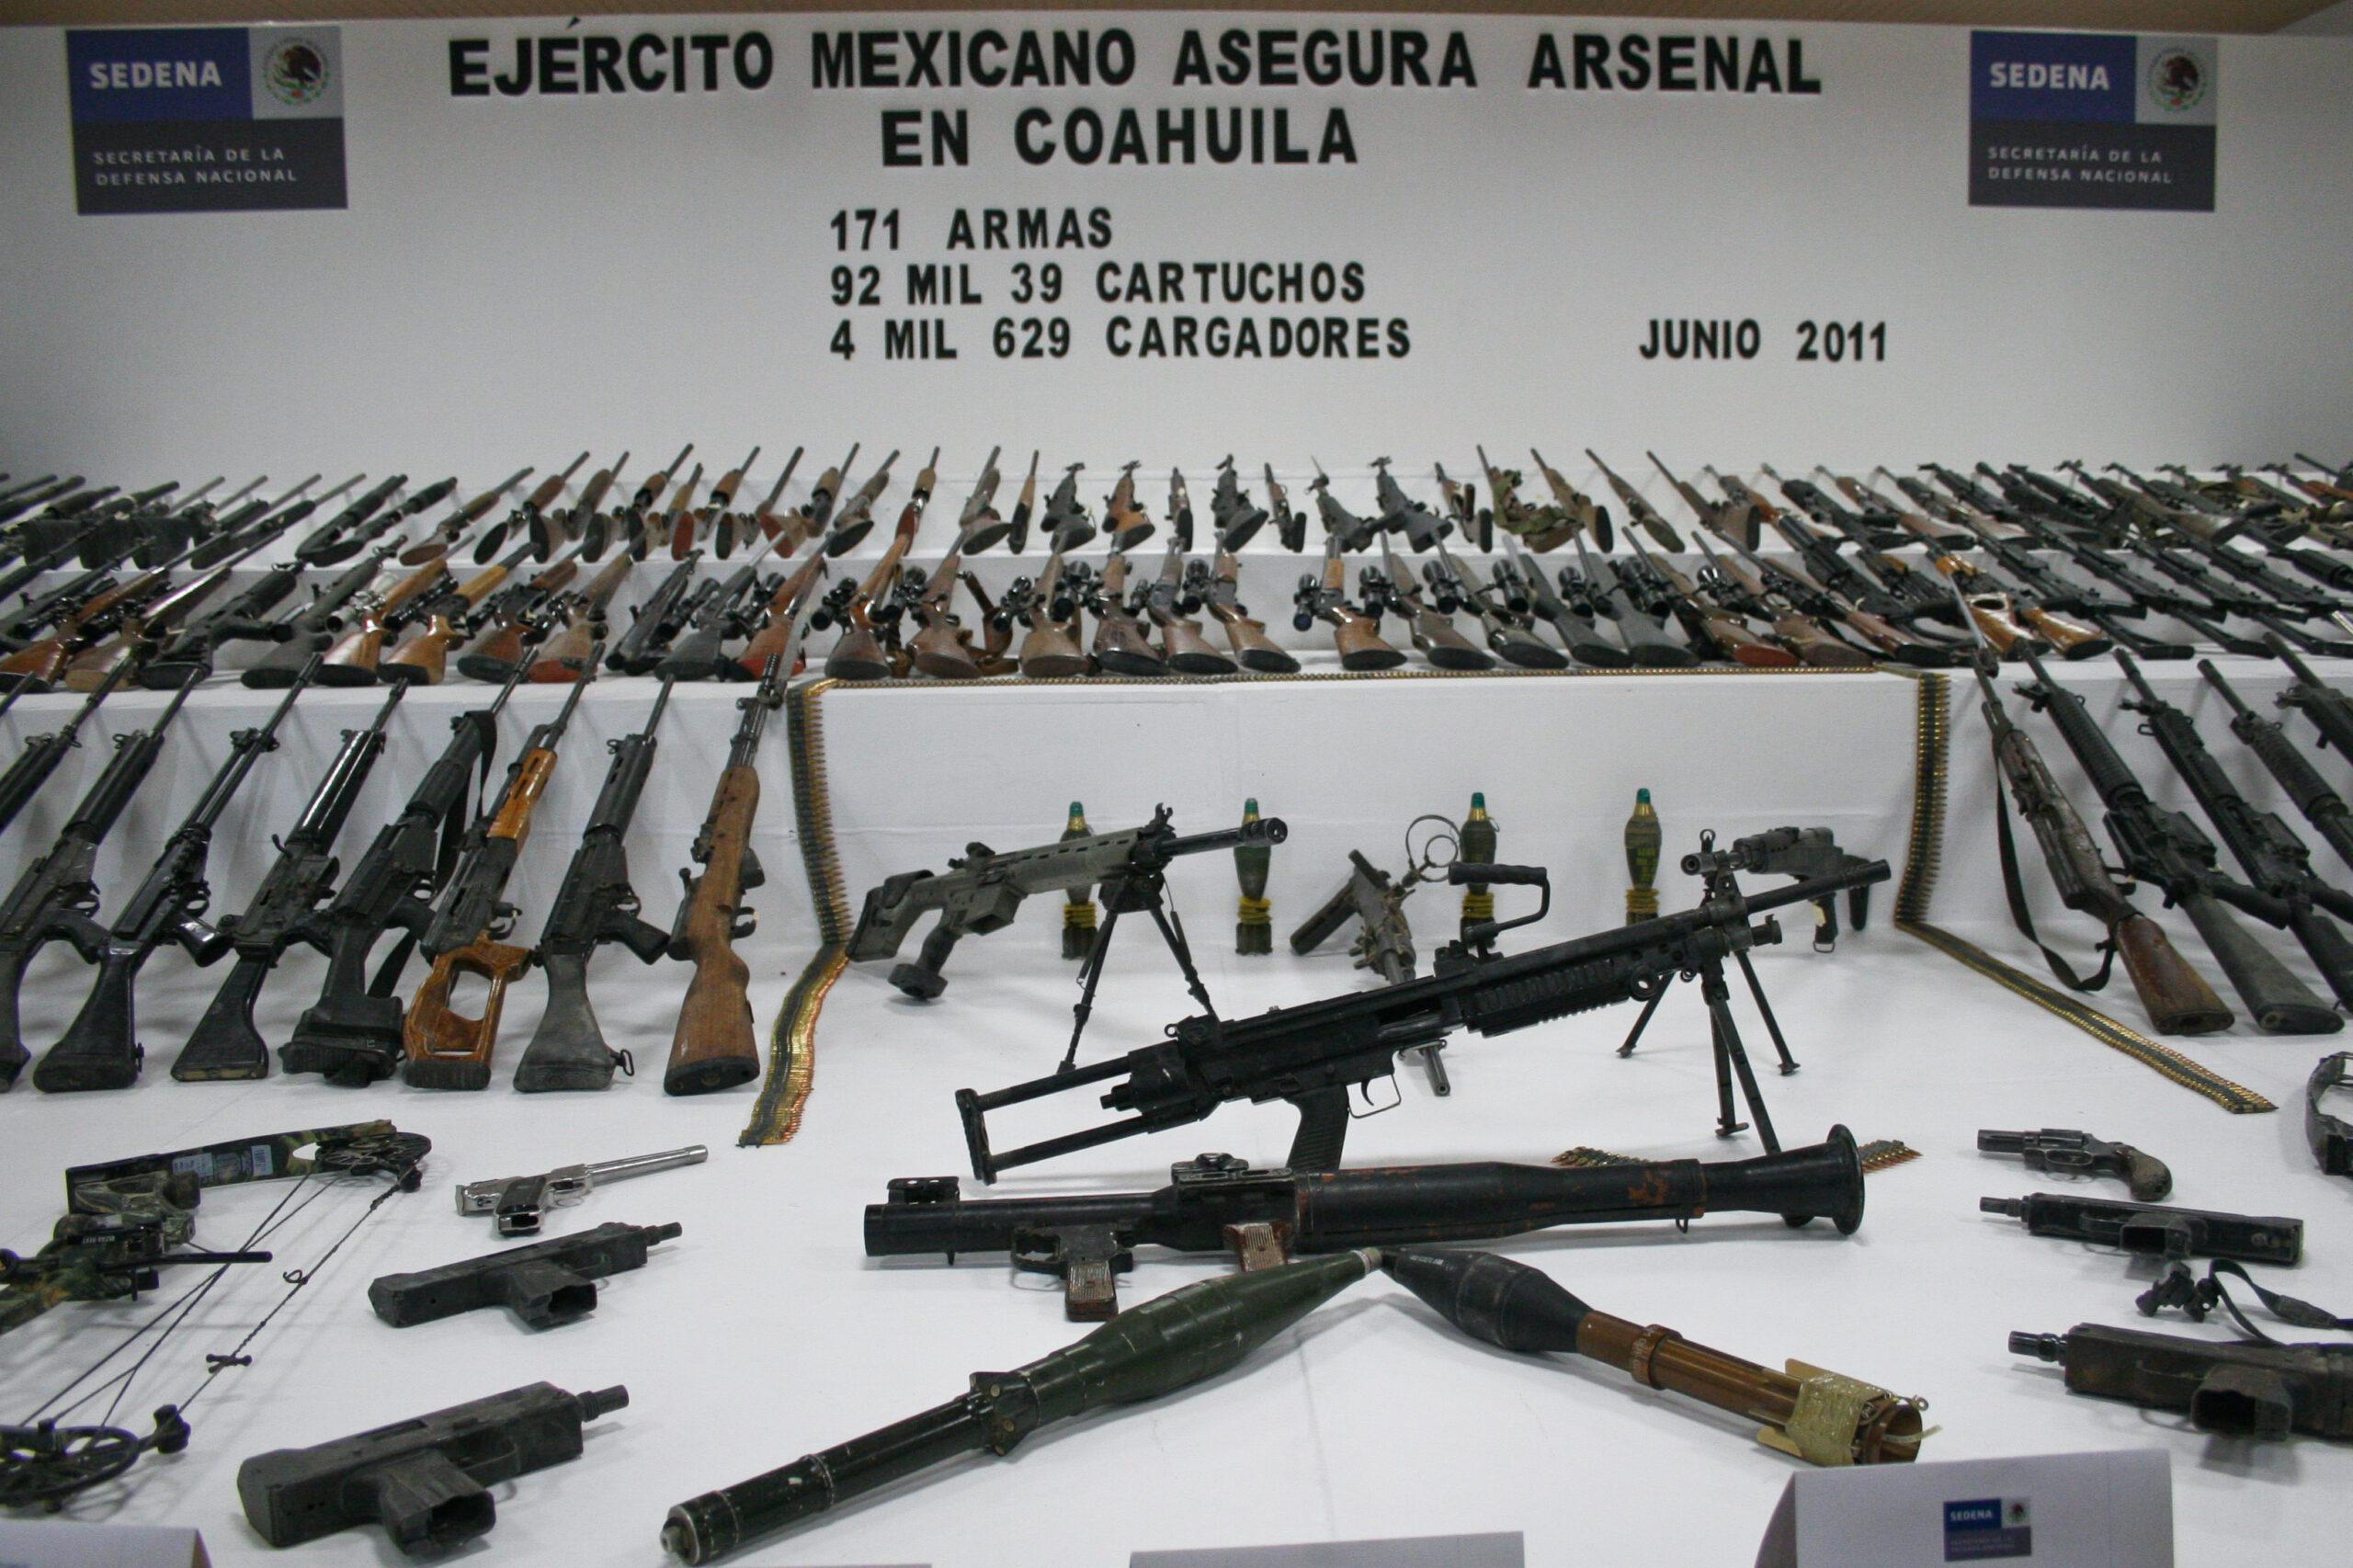 Ejército decomisa 310 armas y 29 granadas en Tamaulipas